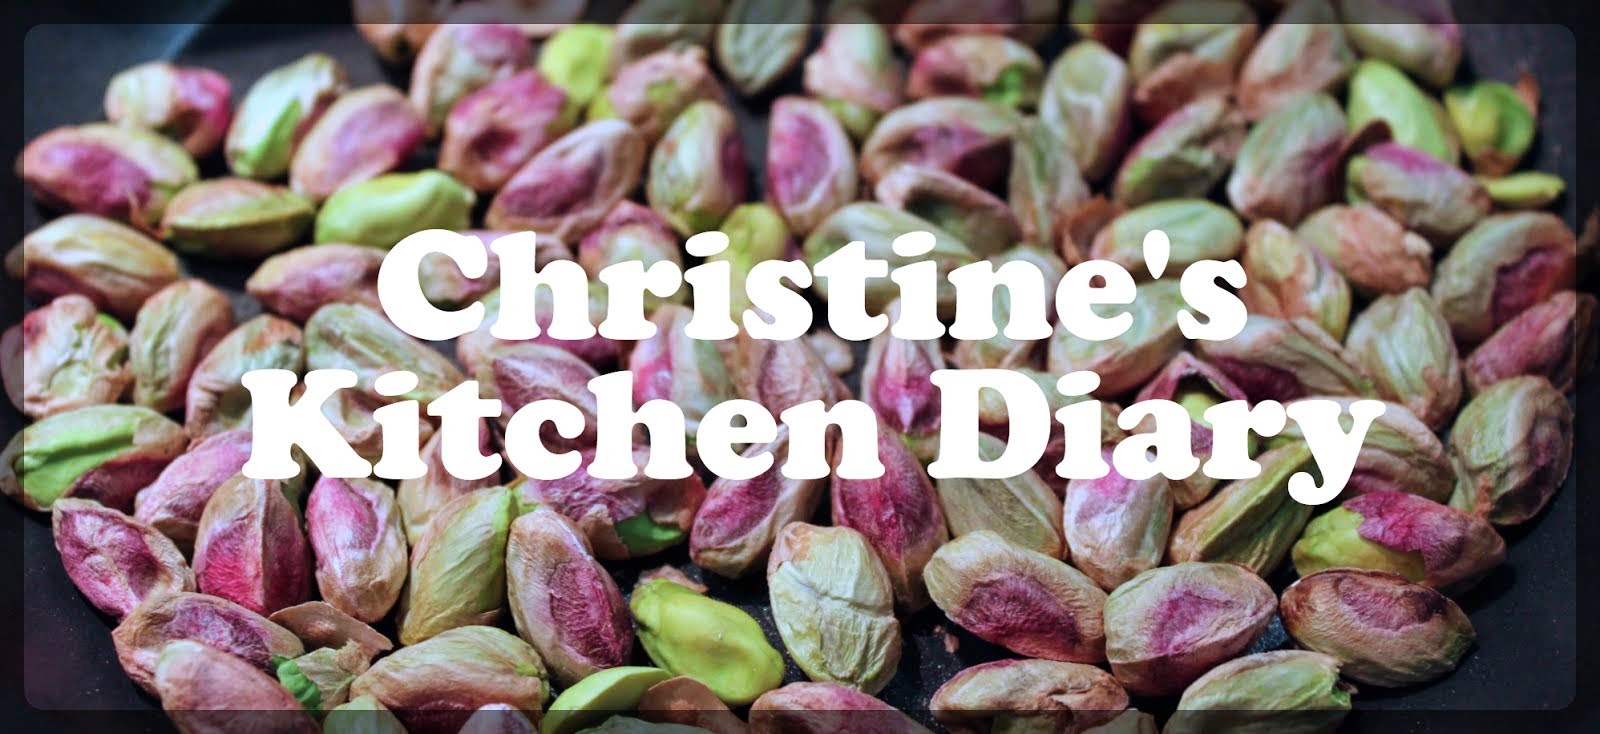 Christine's Kitchen Diary